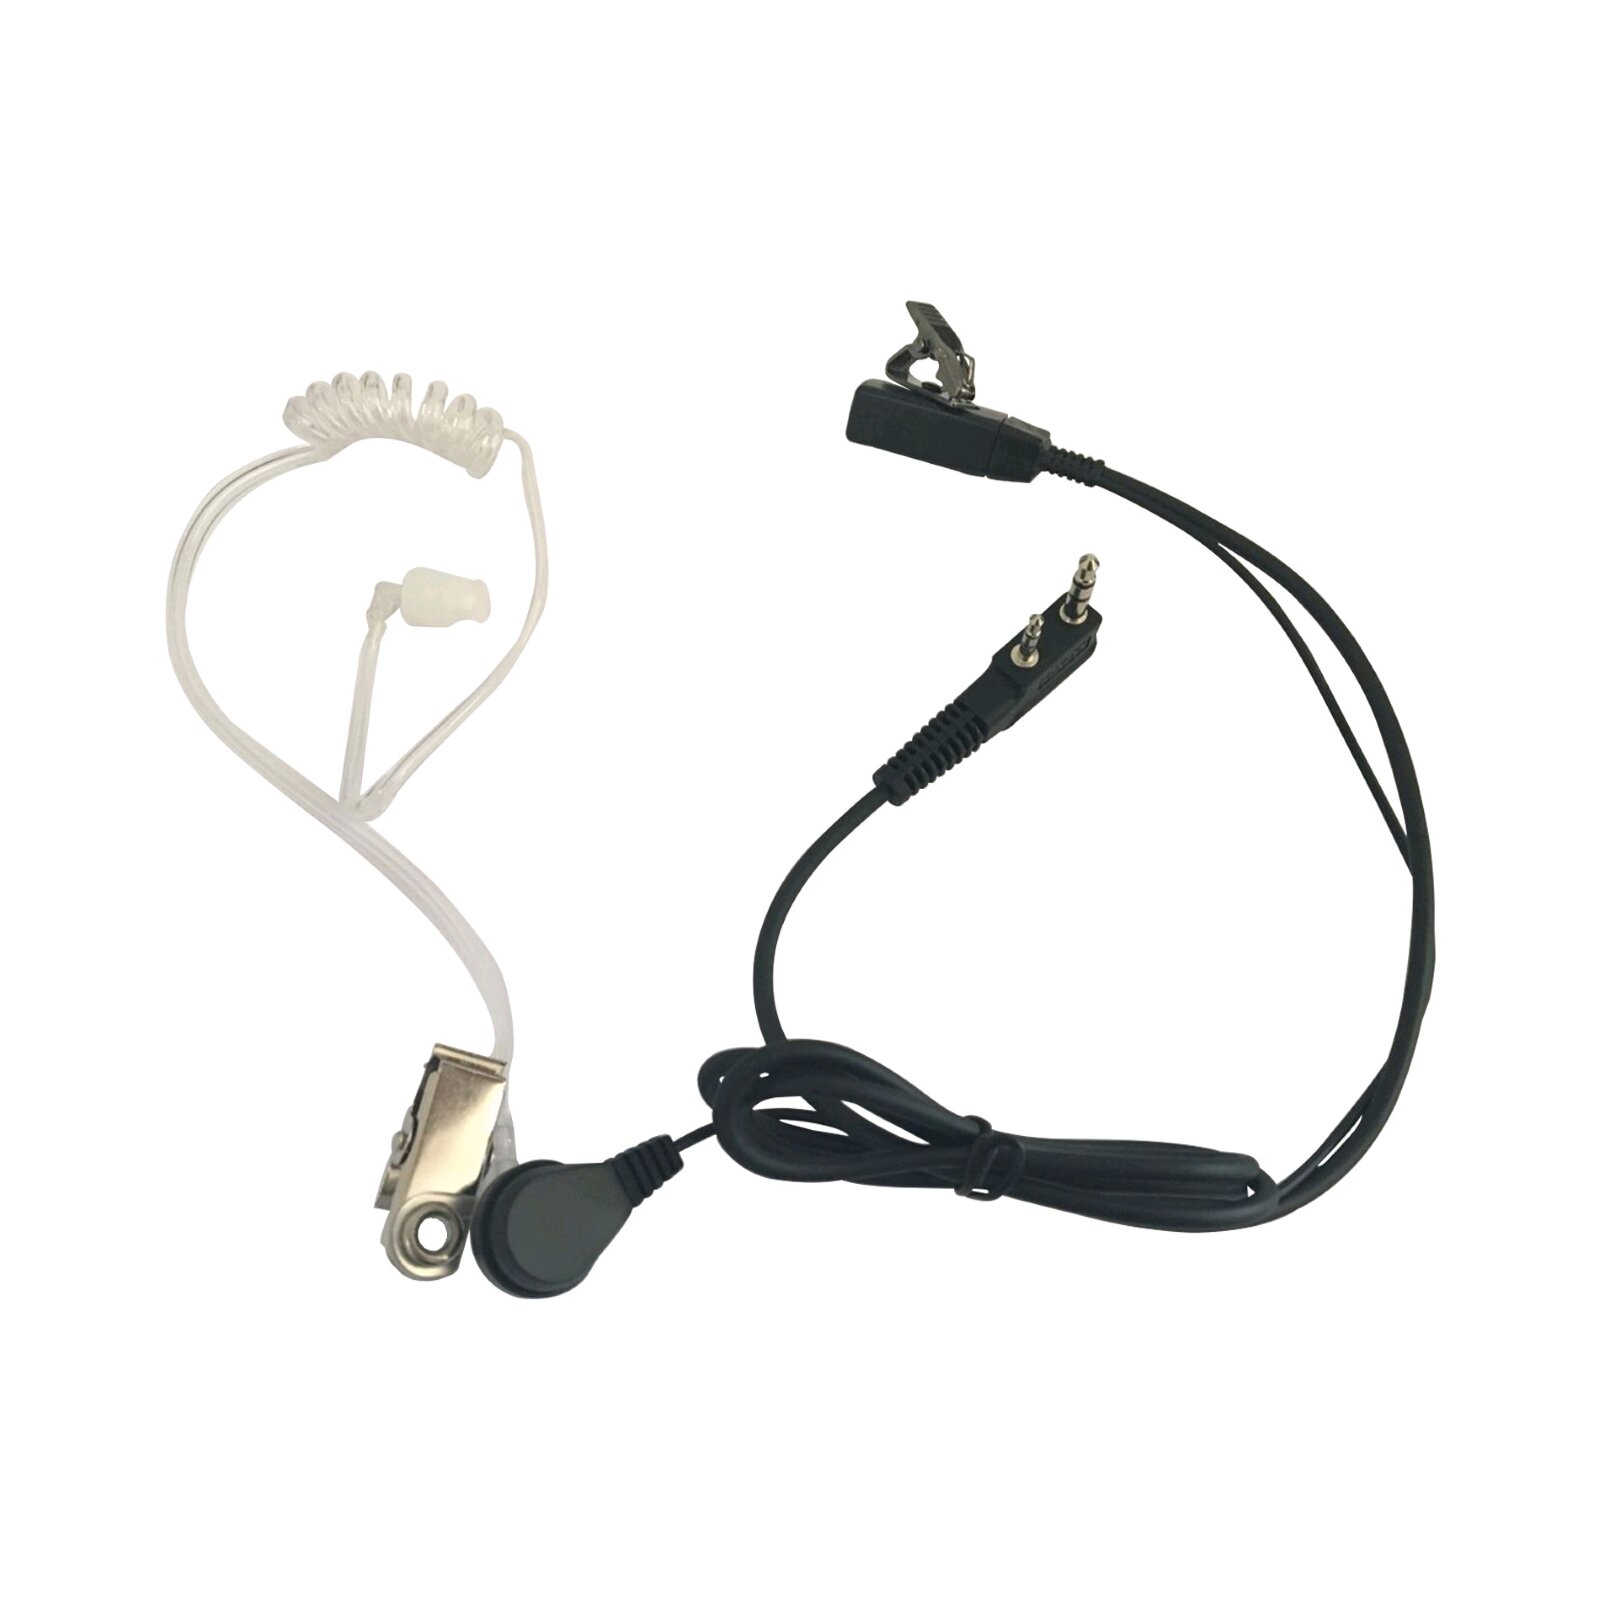 Power Acoustics Ecouteur In-Ear pour talkie-walkie (HS 07) : photo 1